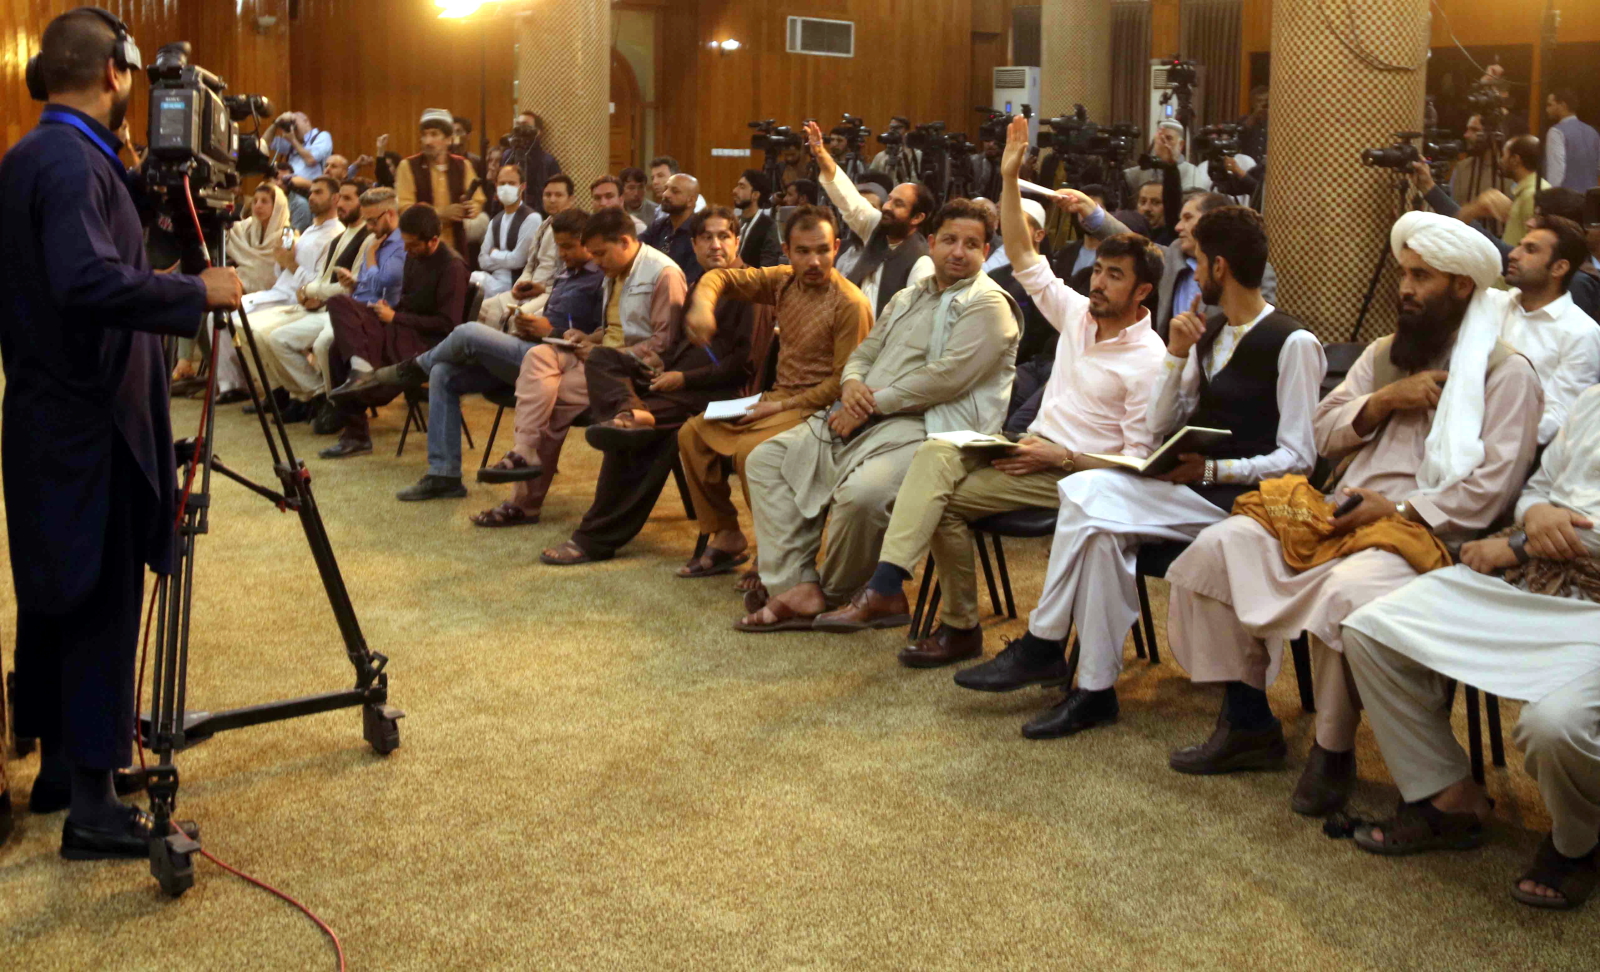 konferencja prasowa z talibami